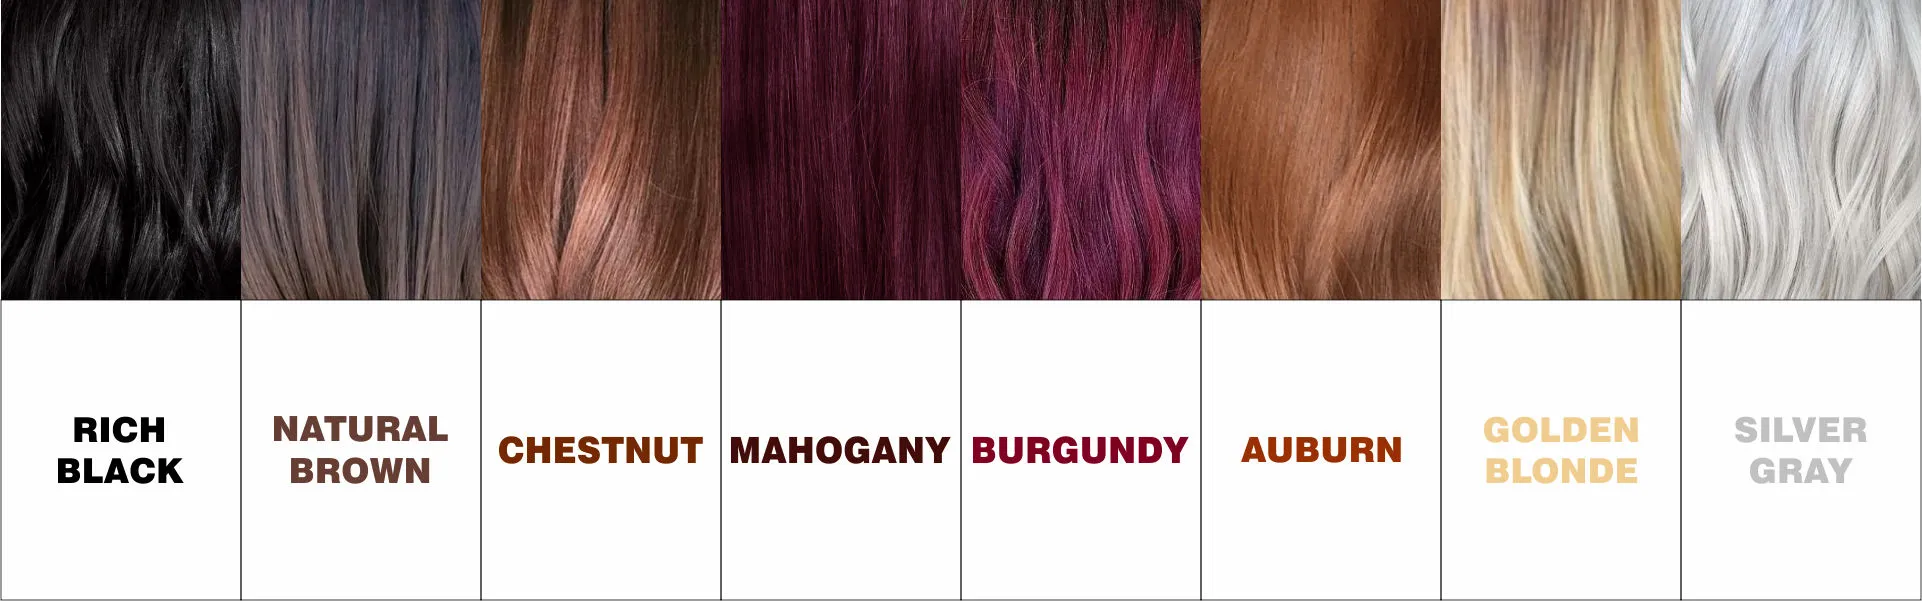 Herbal Hair colors variations - www.dkihenna.com